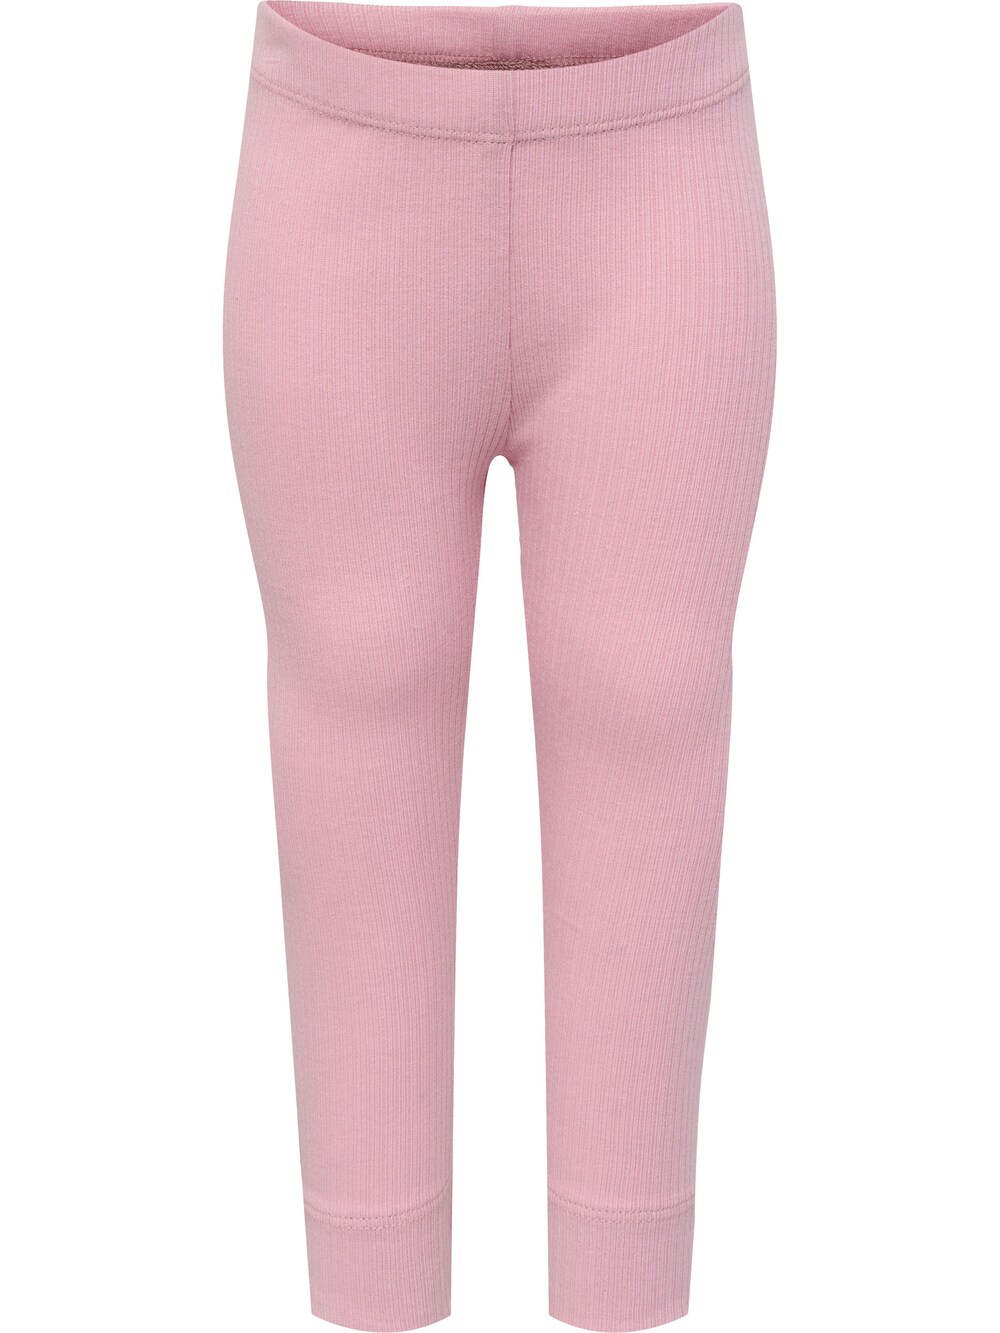 Узкие тренировочные брюки Hummel Irene, розовый